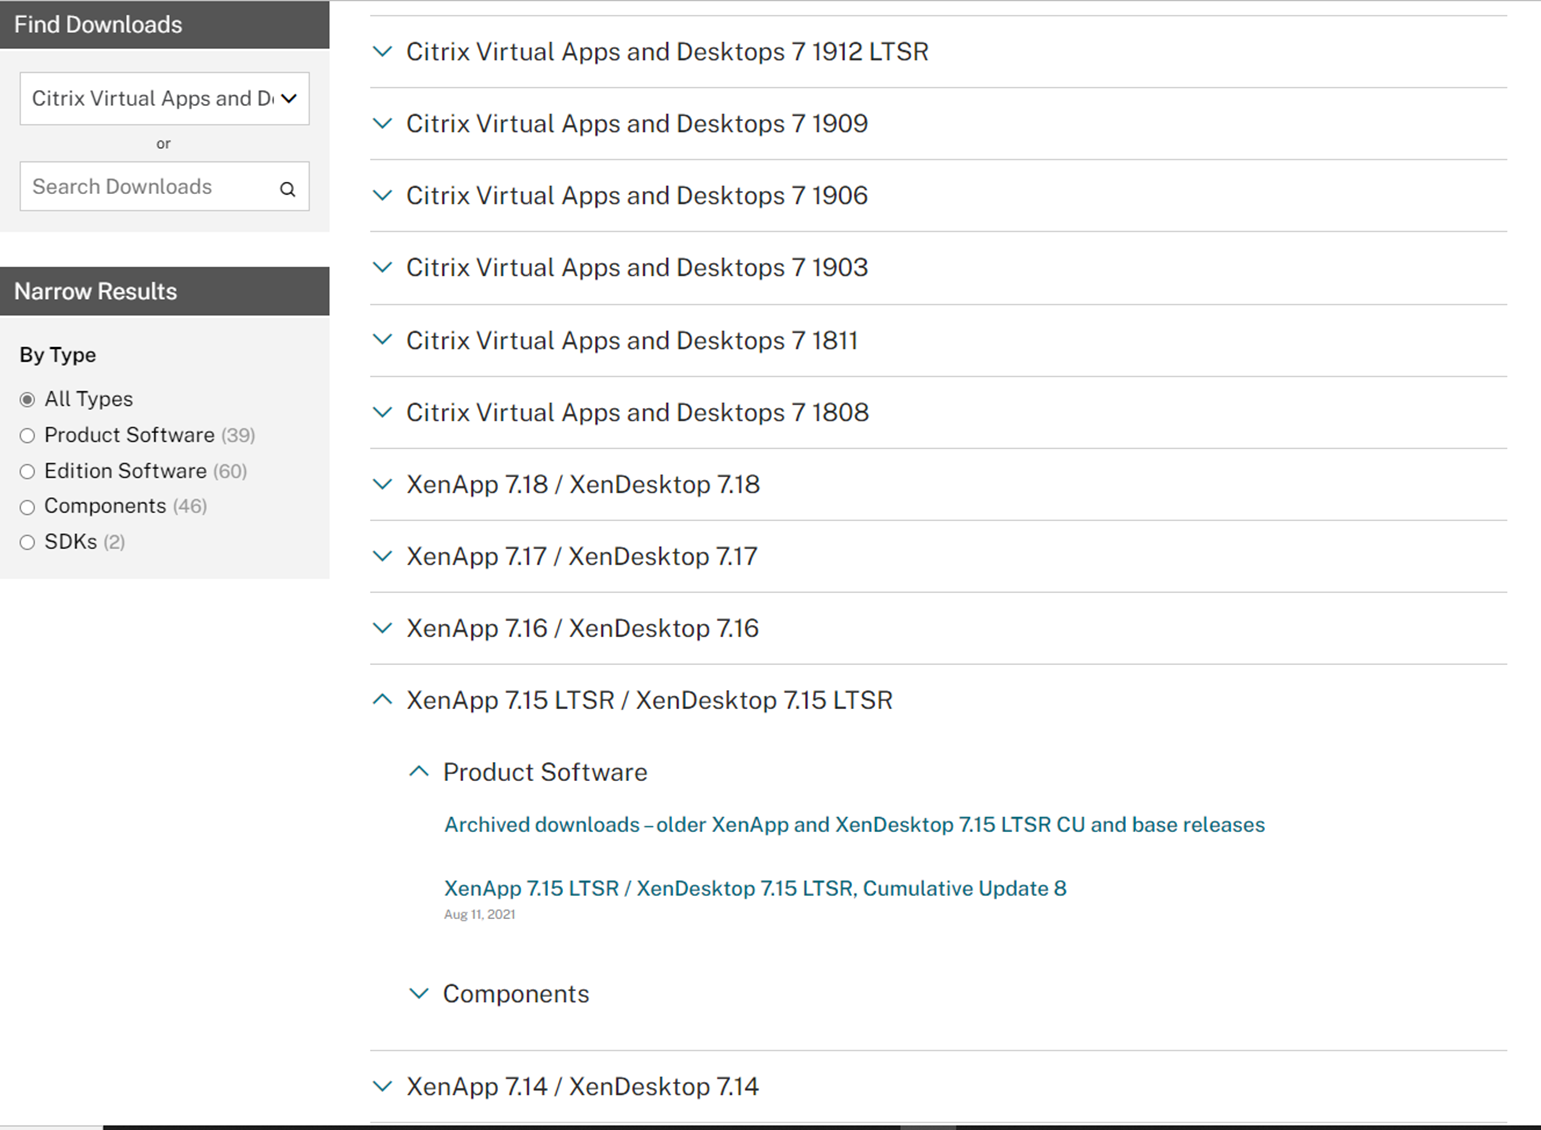 010722 1924 Howtoupgrad5 - How to upgrade to Citrix XenApp 7.15 LTSR